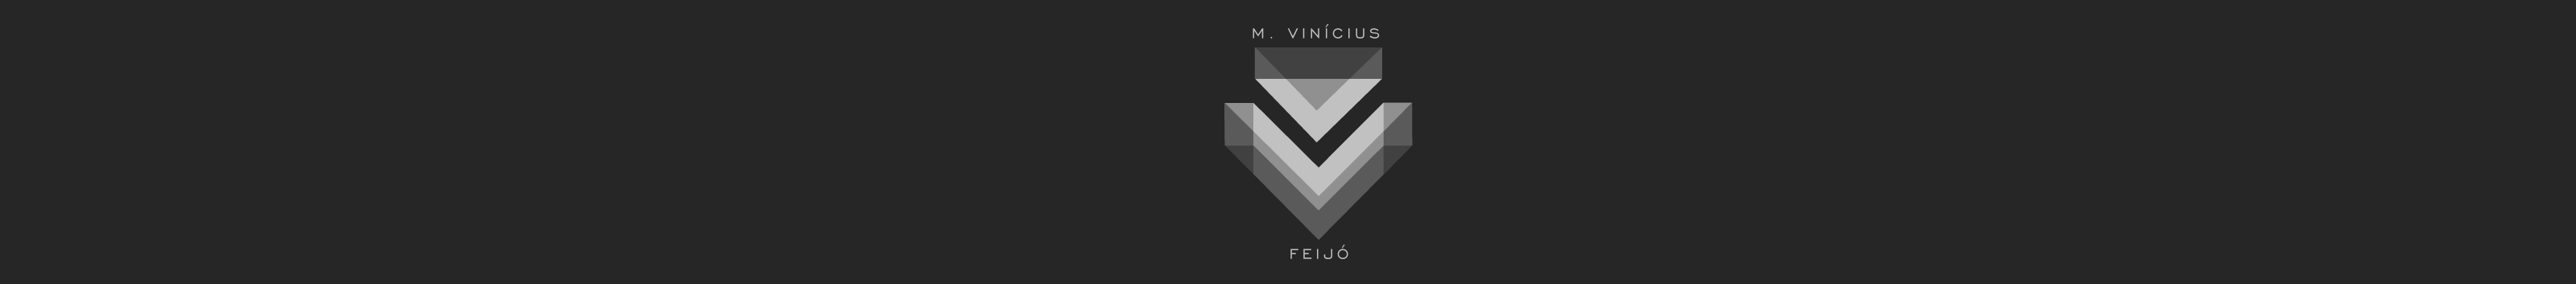 Баннер профиля Marcos Vinícius Feijó